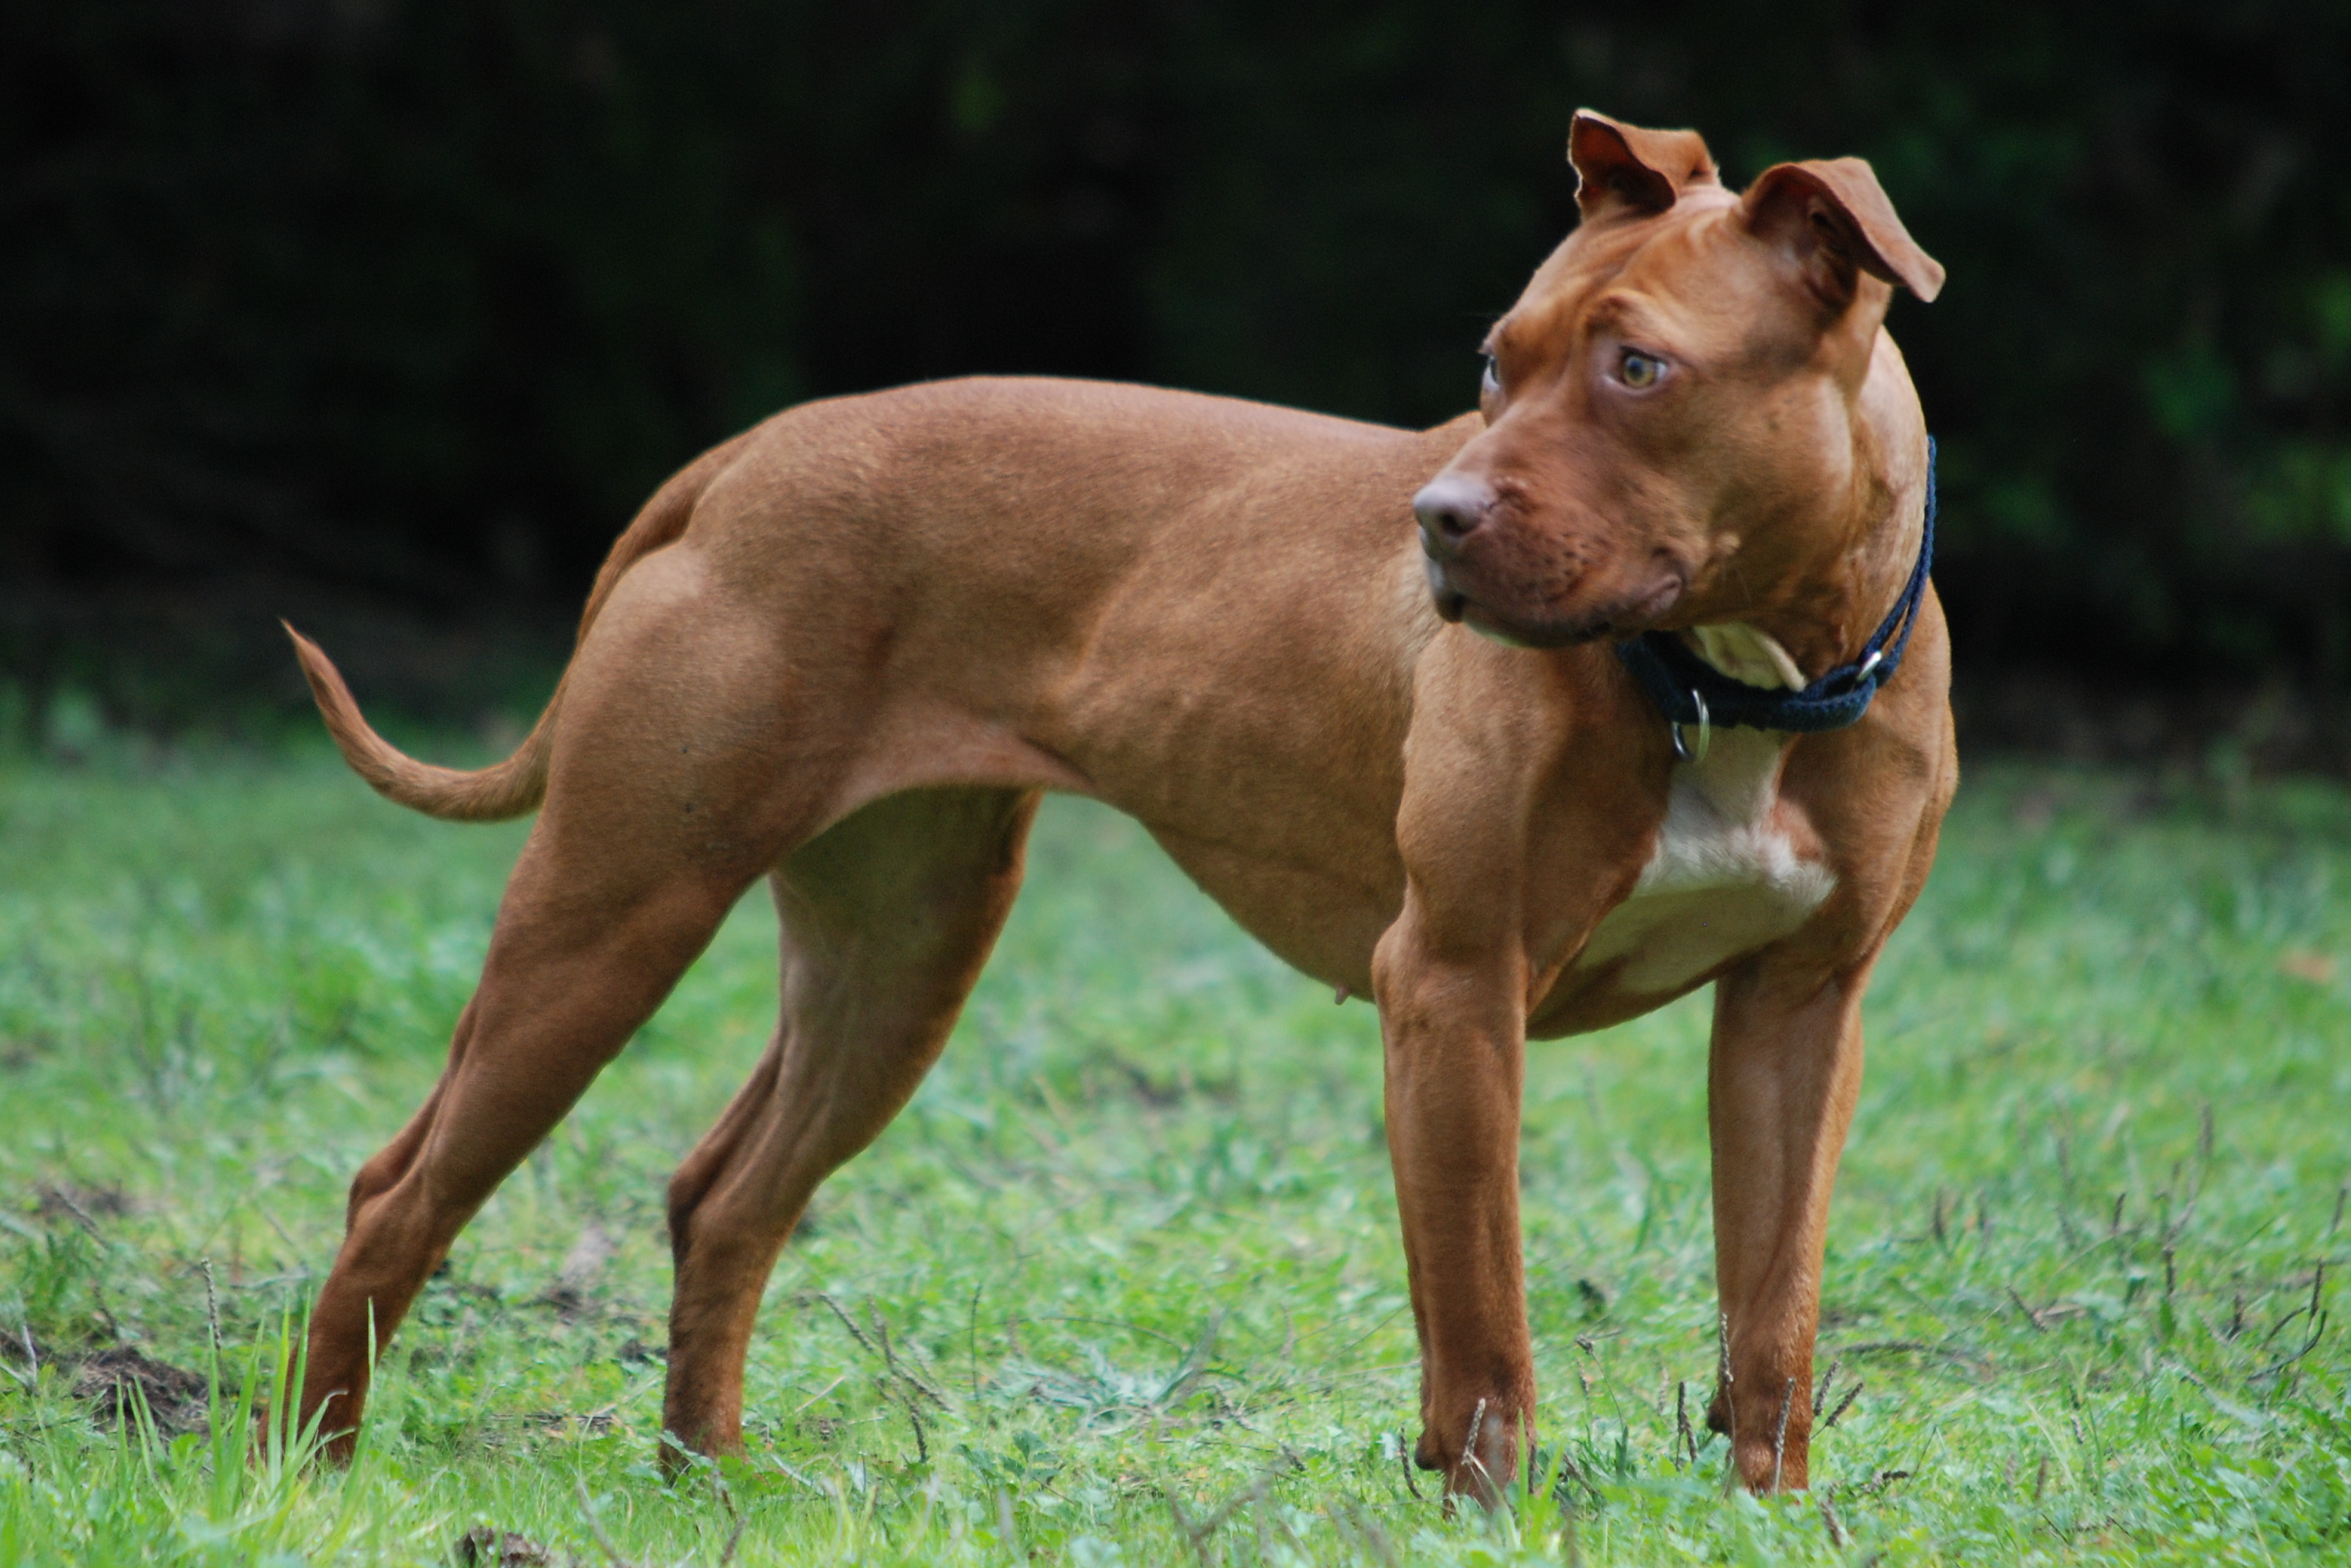 Pit bull terrier americano - Wikipedia, la enciclopedia libre